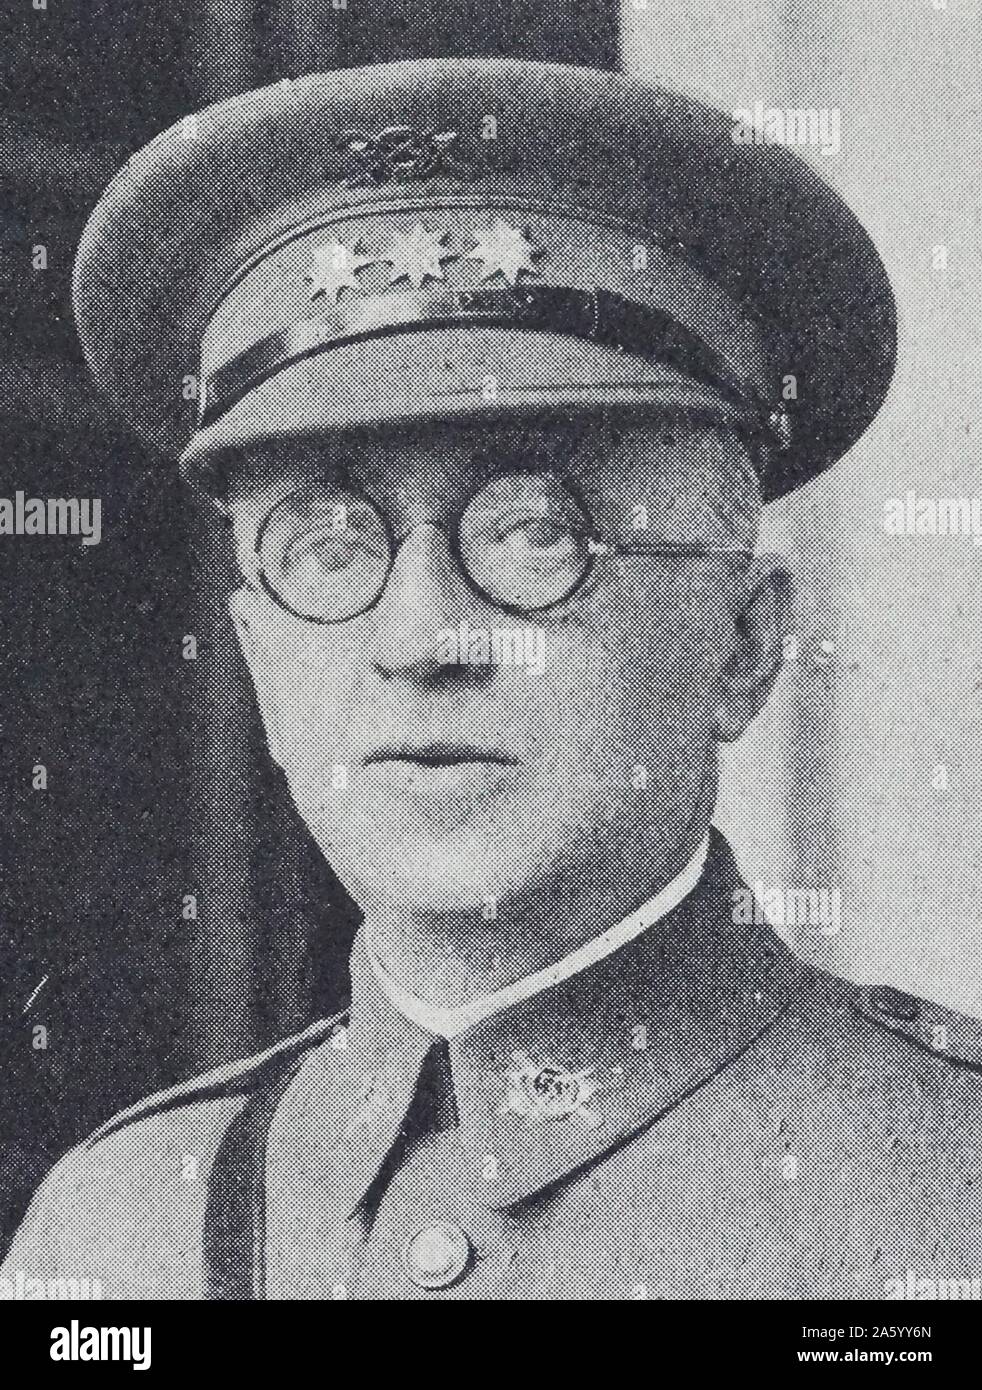 Angelo generale García Benitez generale spagnolo che hanno partecipato al tentativo di colpo di stato fallito contro la Seconda Repubblica, che ha portato alla guerra civile spagnola. Foto Stock